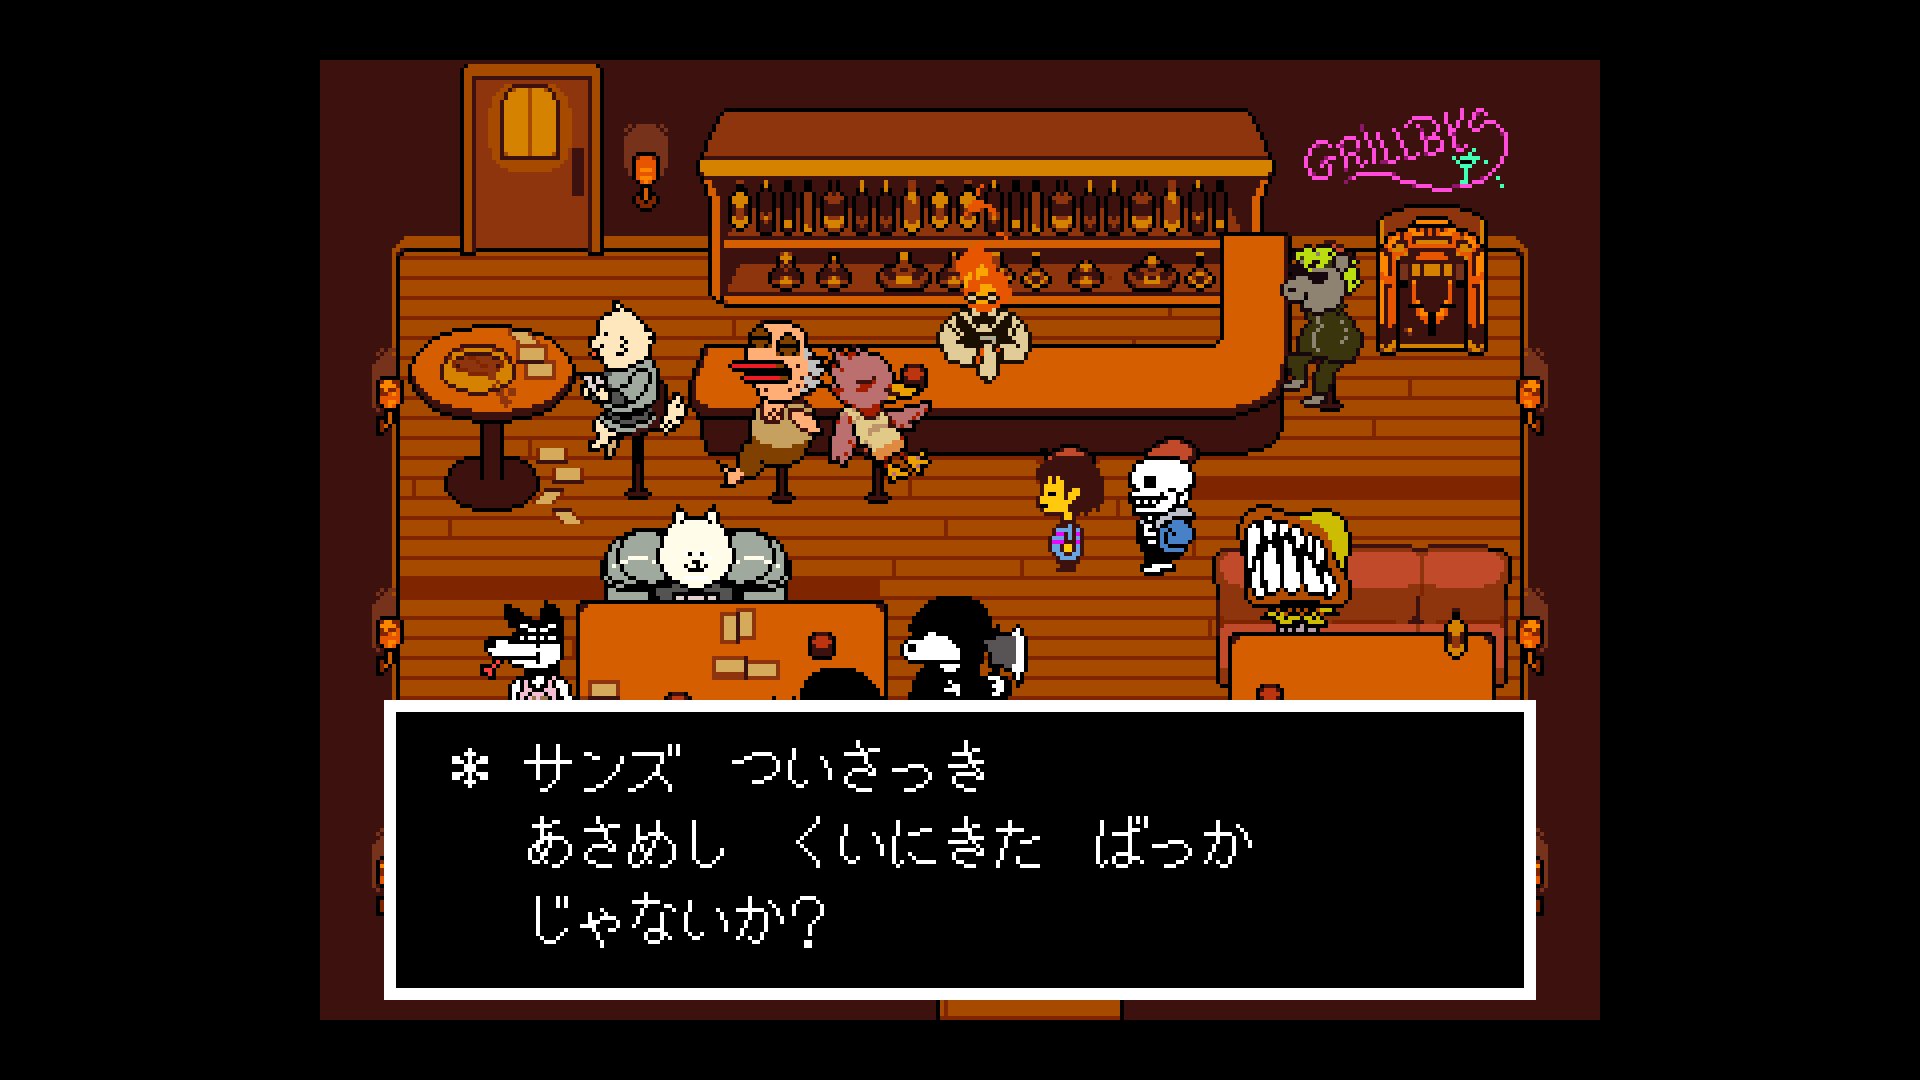 Undertale アンダーテイル Playstation 4 Playstation Vitaにてリリースへ 日本語も搭載 Automaton